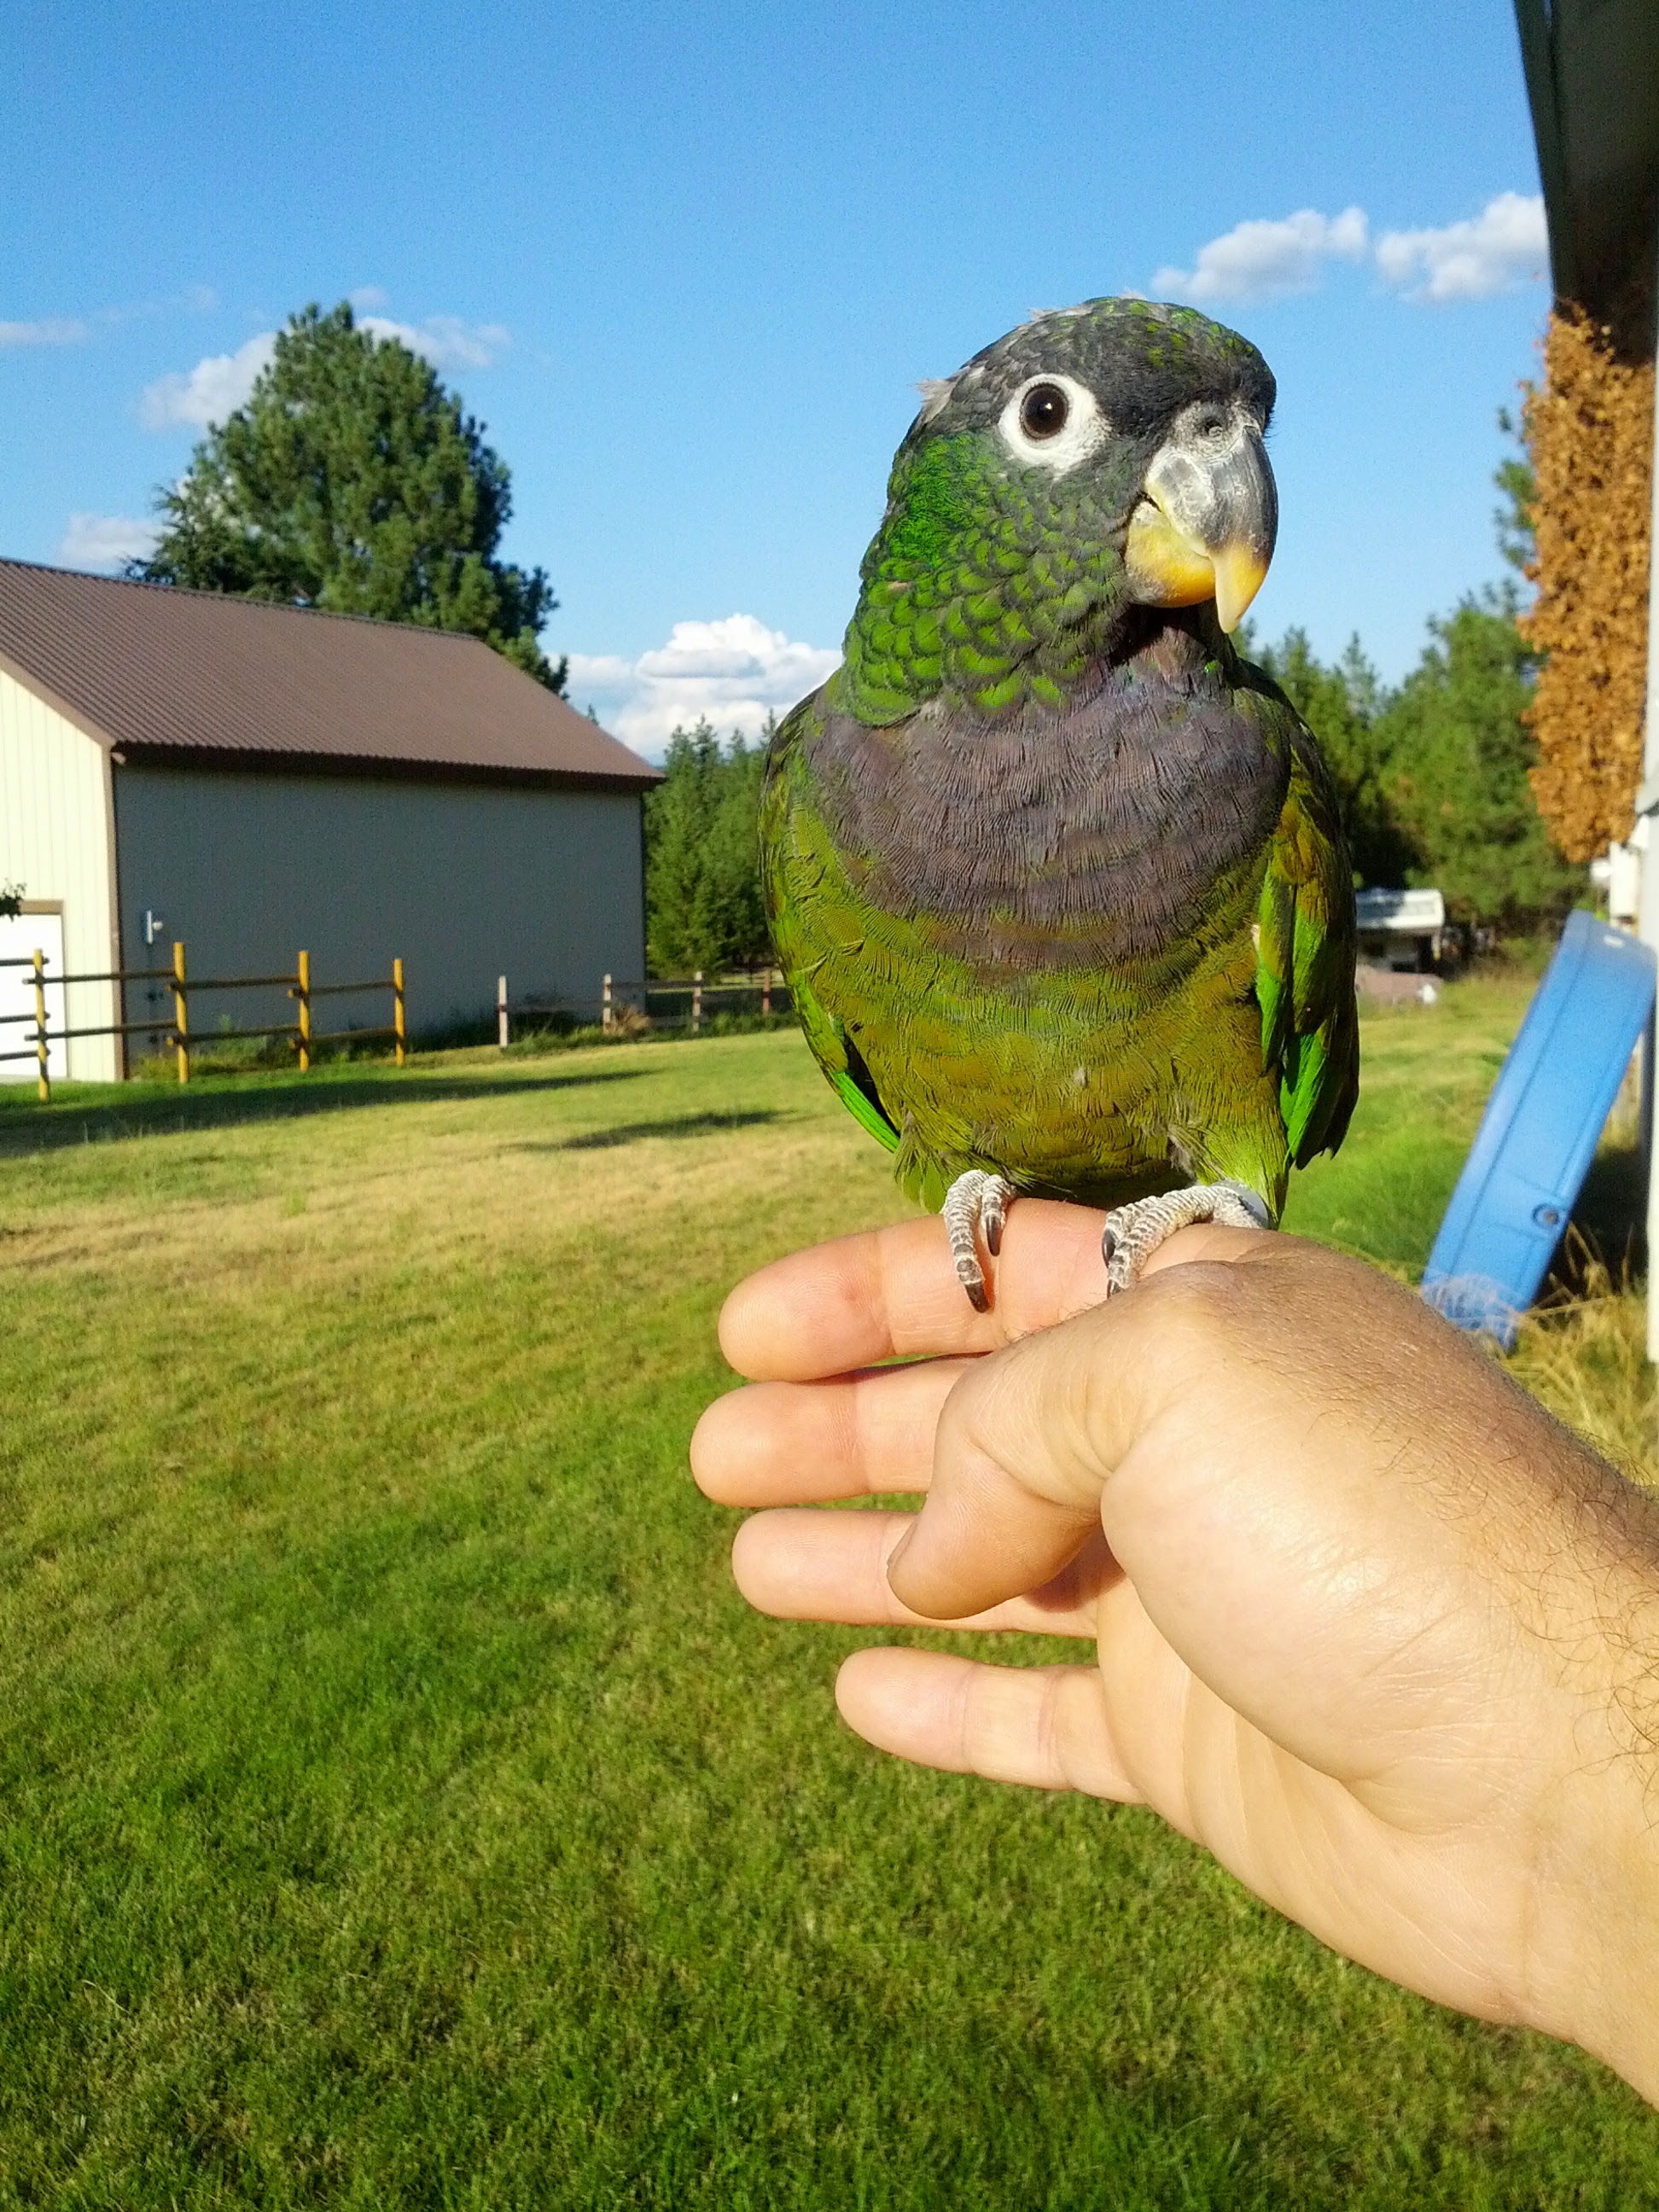 adoptable Bird in Nine Mile Falls,WA named Gizmo